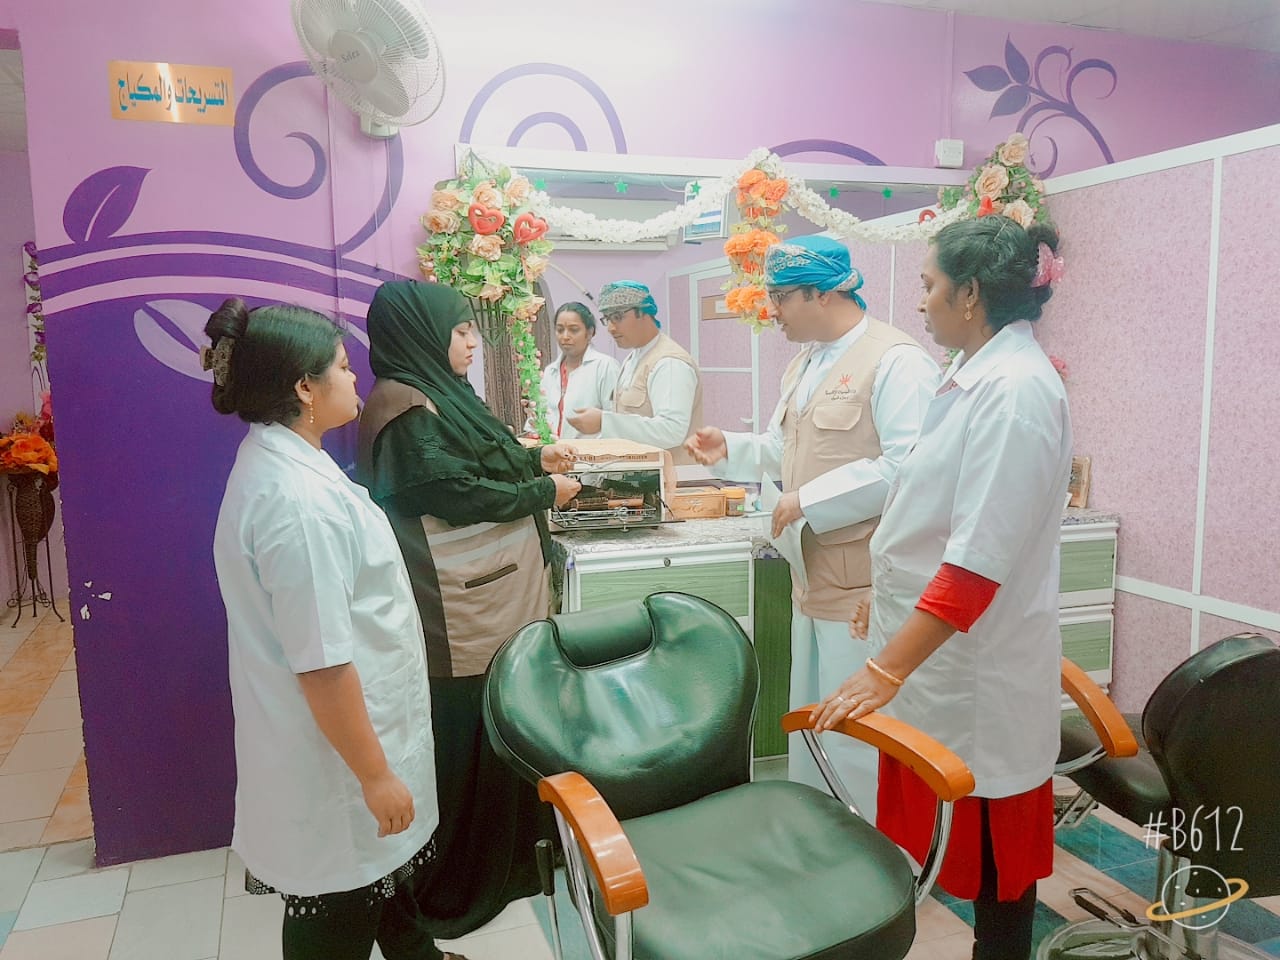 بلدية الخابورة تفتش صالونات "التجميل" للتأكد من الالتزام بالاشتراطات الصحية